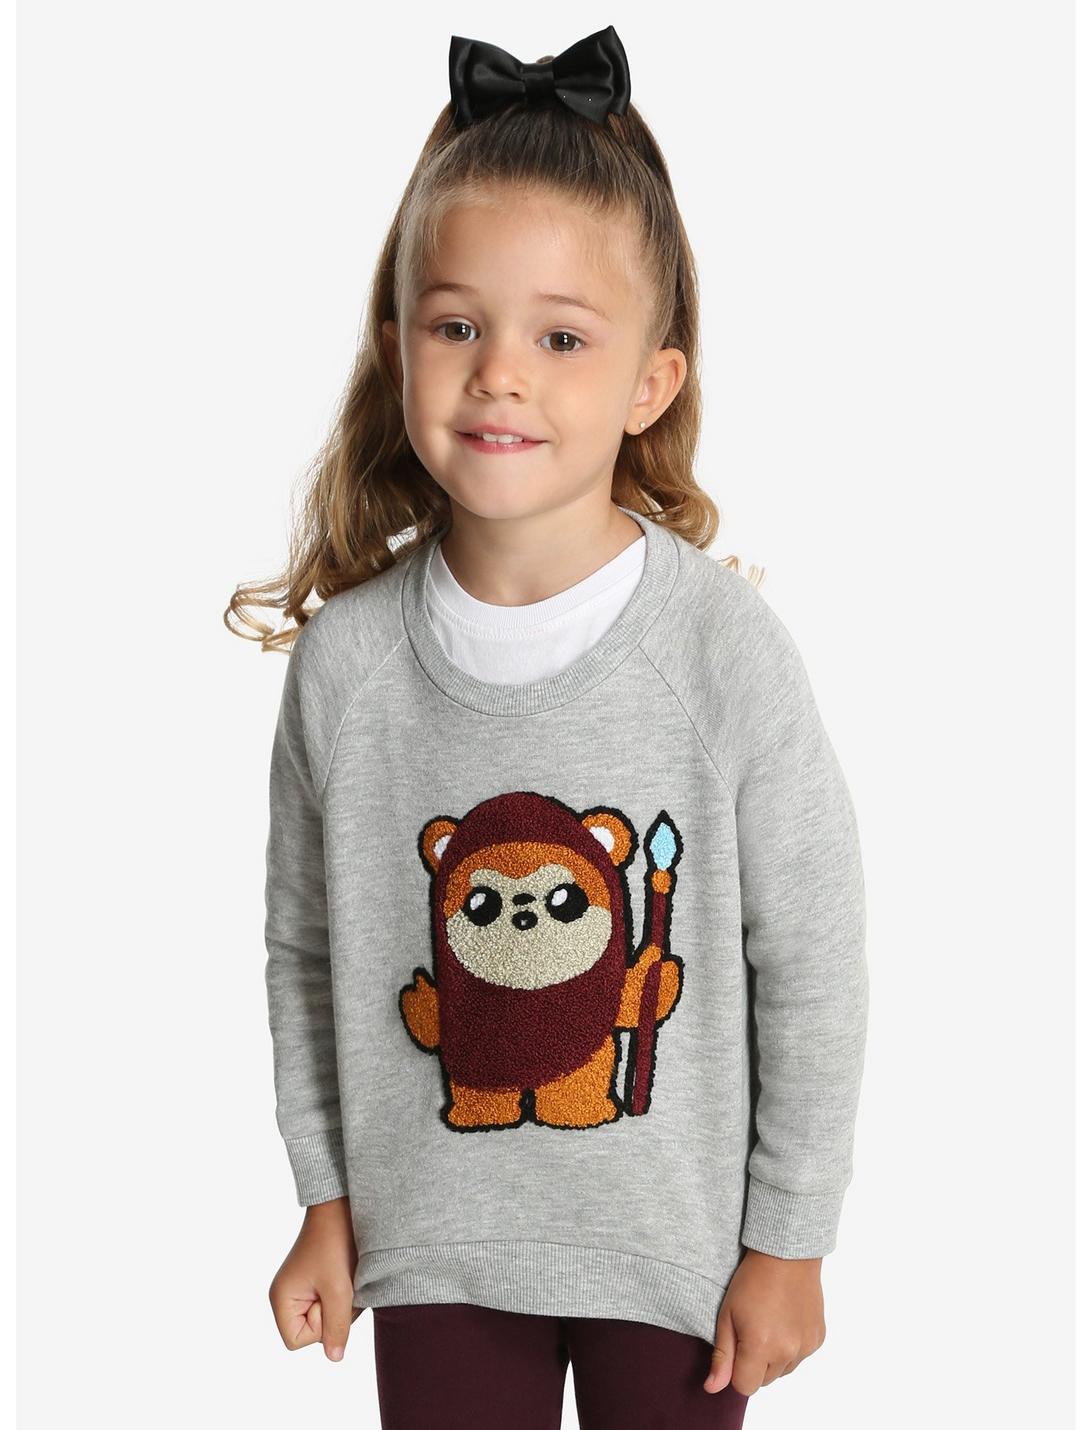 Star Wars Ewok Fuzzy Toddler Pullover Sweatshirt, GREY, hi-res